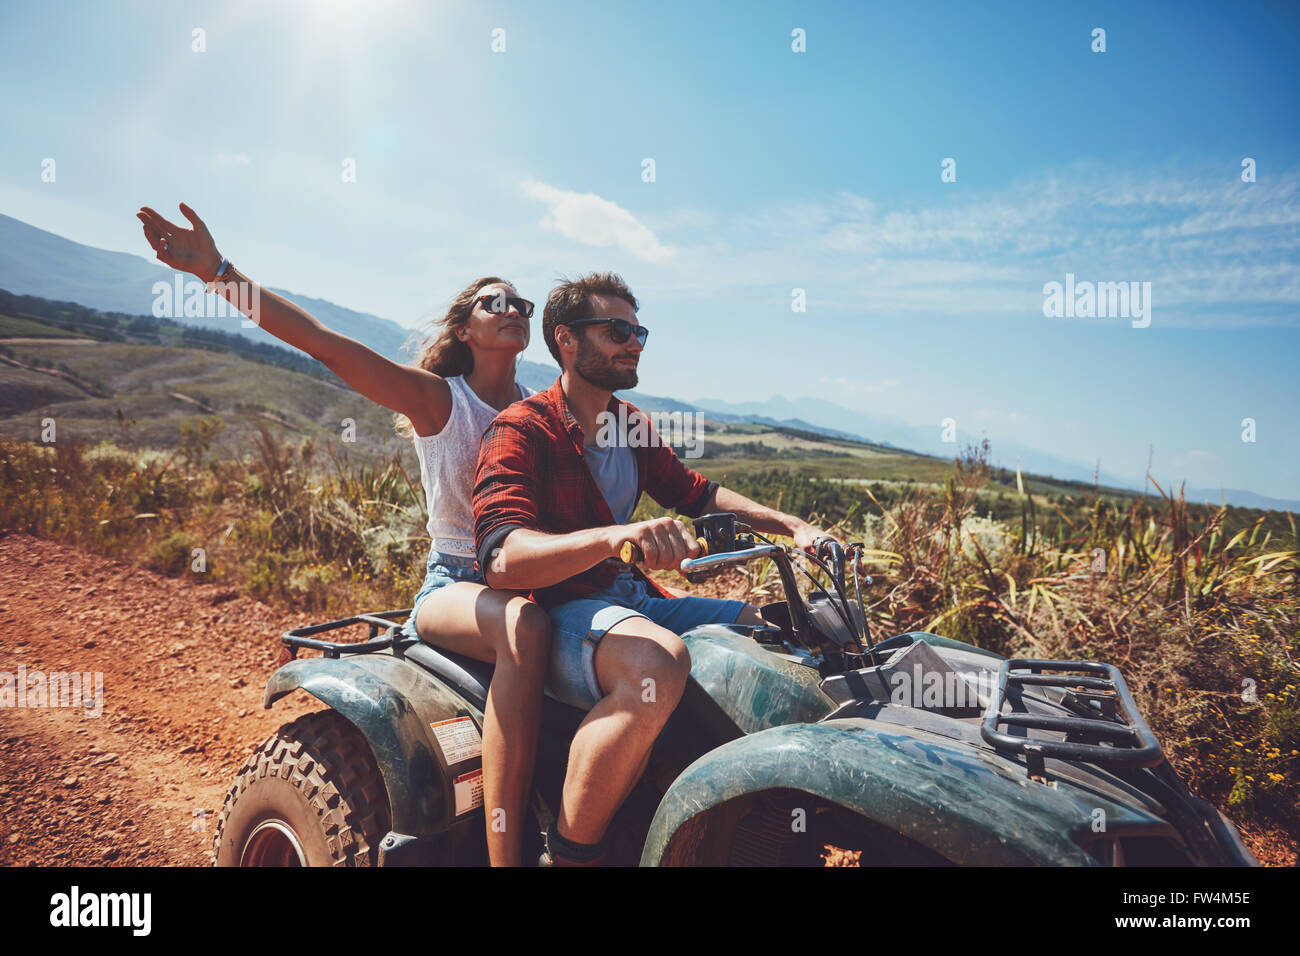 Glückliches junges Paar in der Natur auf einem Quad-Bike. Junger Mann und Frau genießen ein Quad-Bike fahren in Landschaft. Fahren Mann und Frau Stockfoto